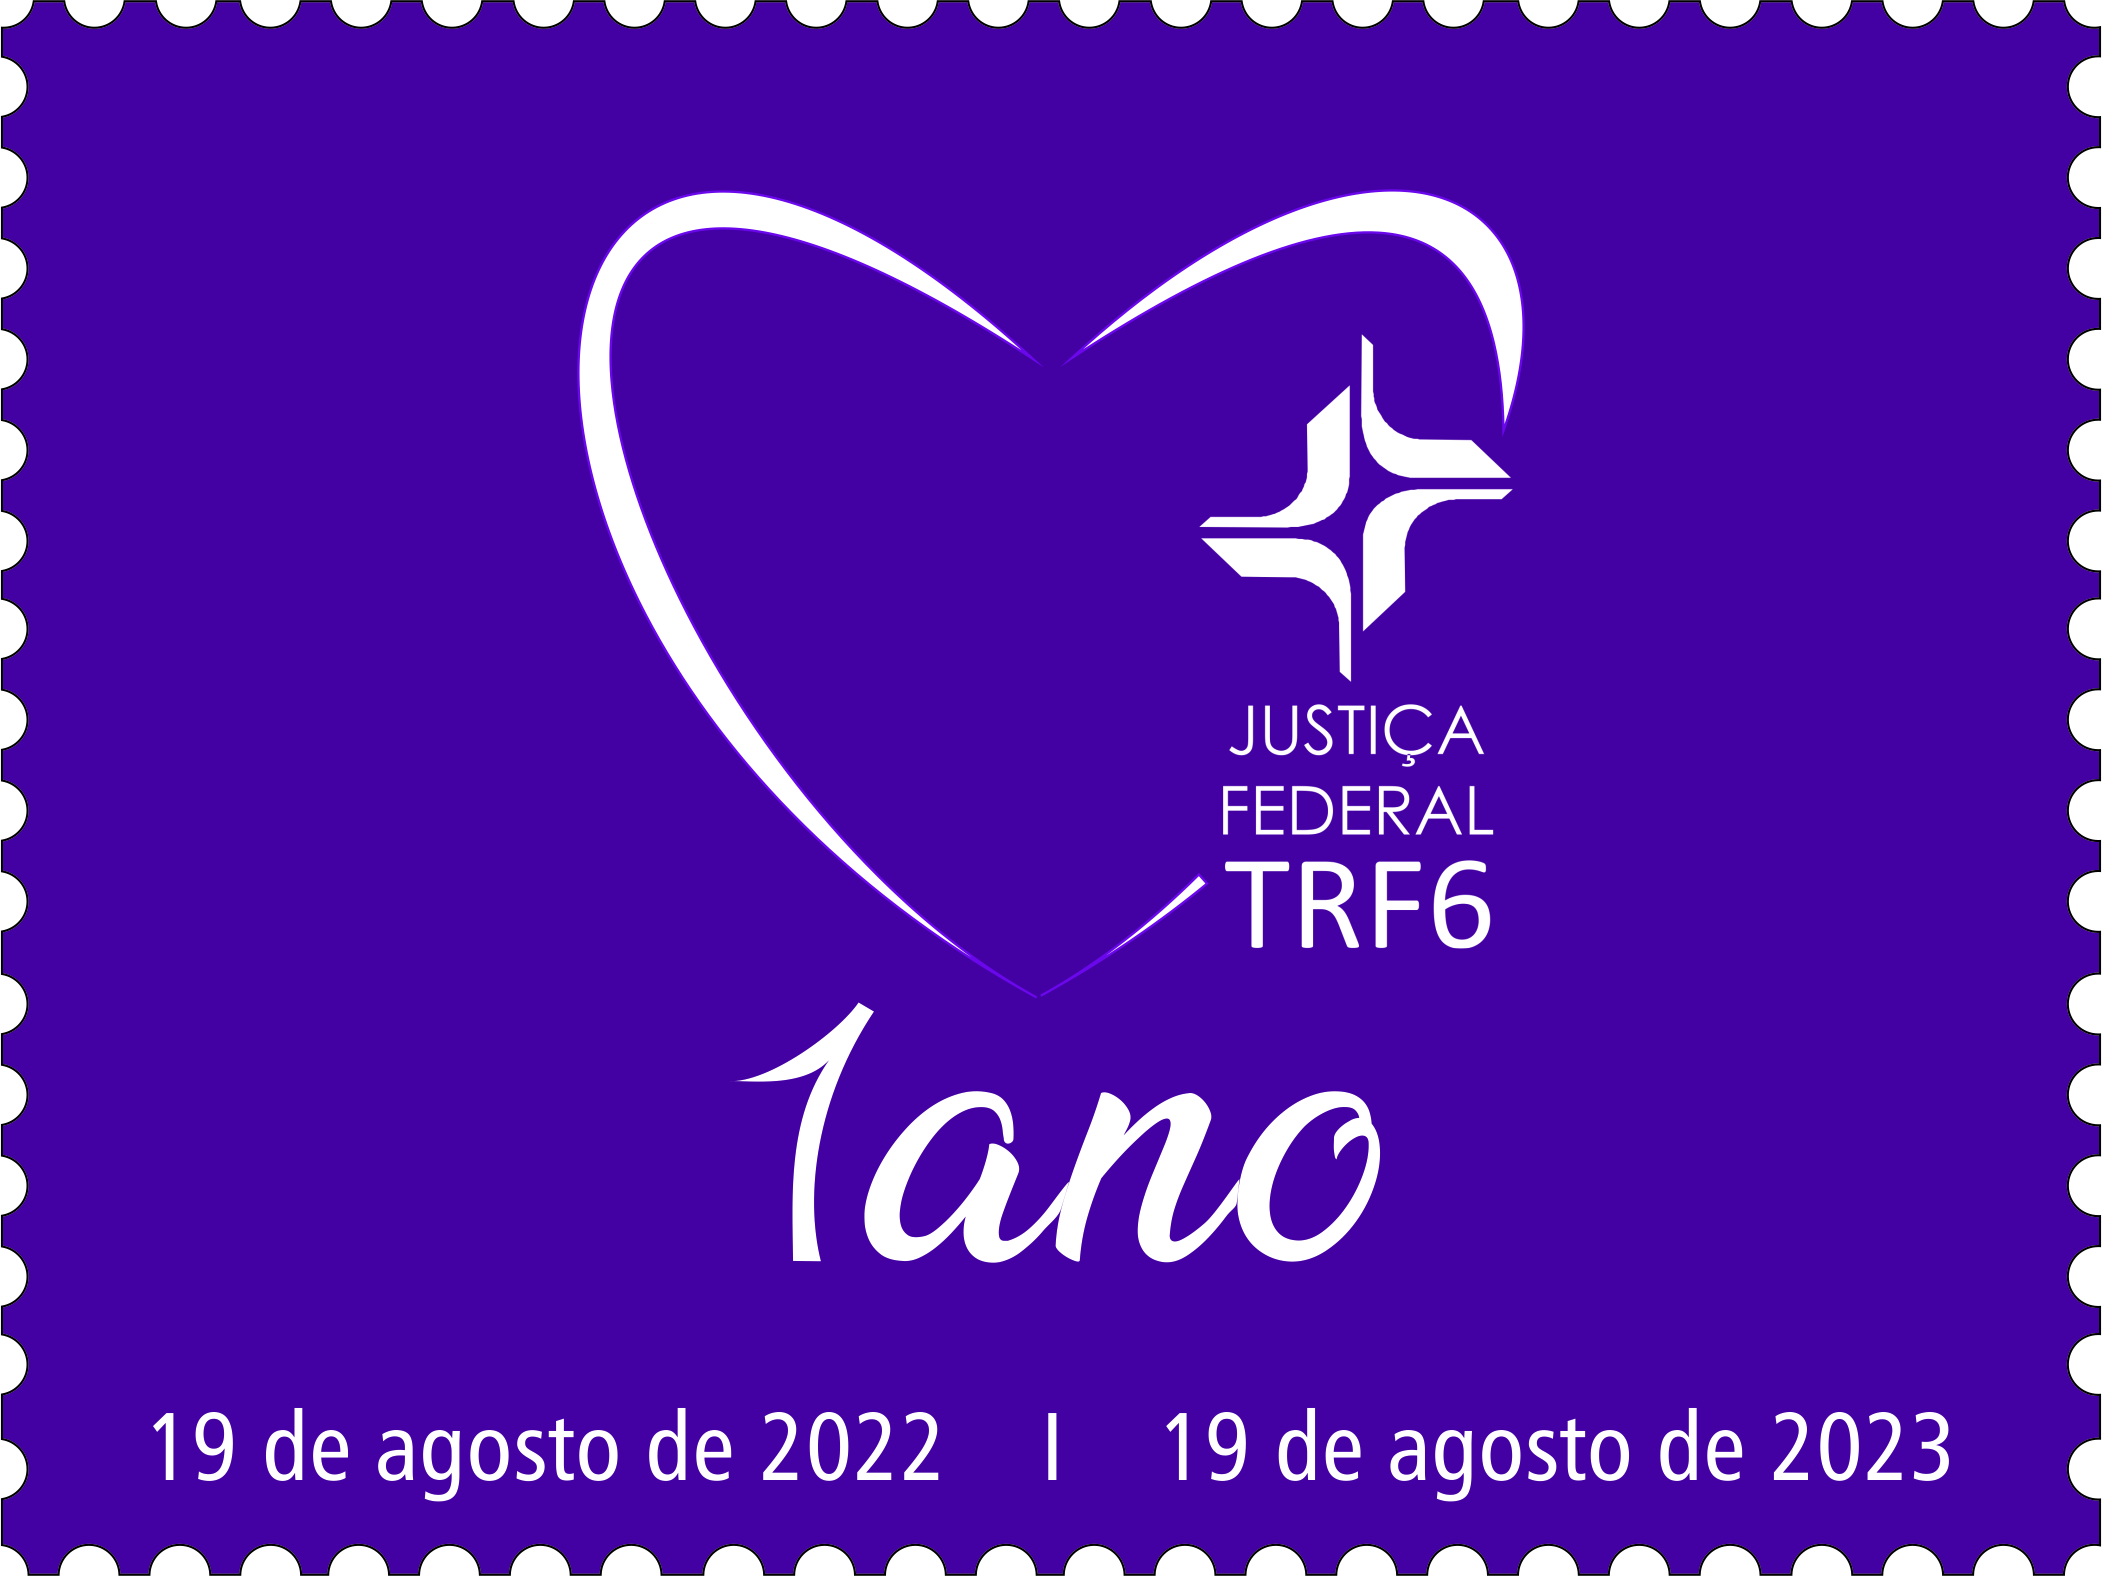 Selo comemorativo do TRF6 que tem como elemento central o coração na cor fúcsia. 